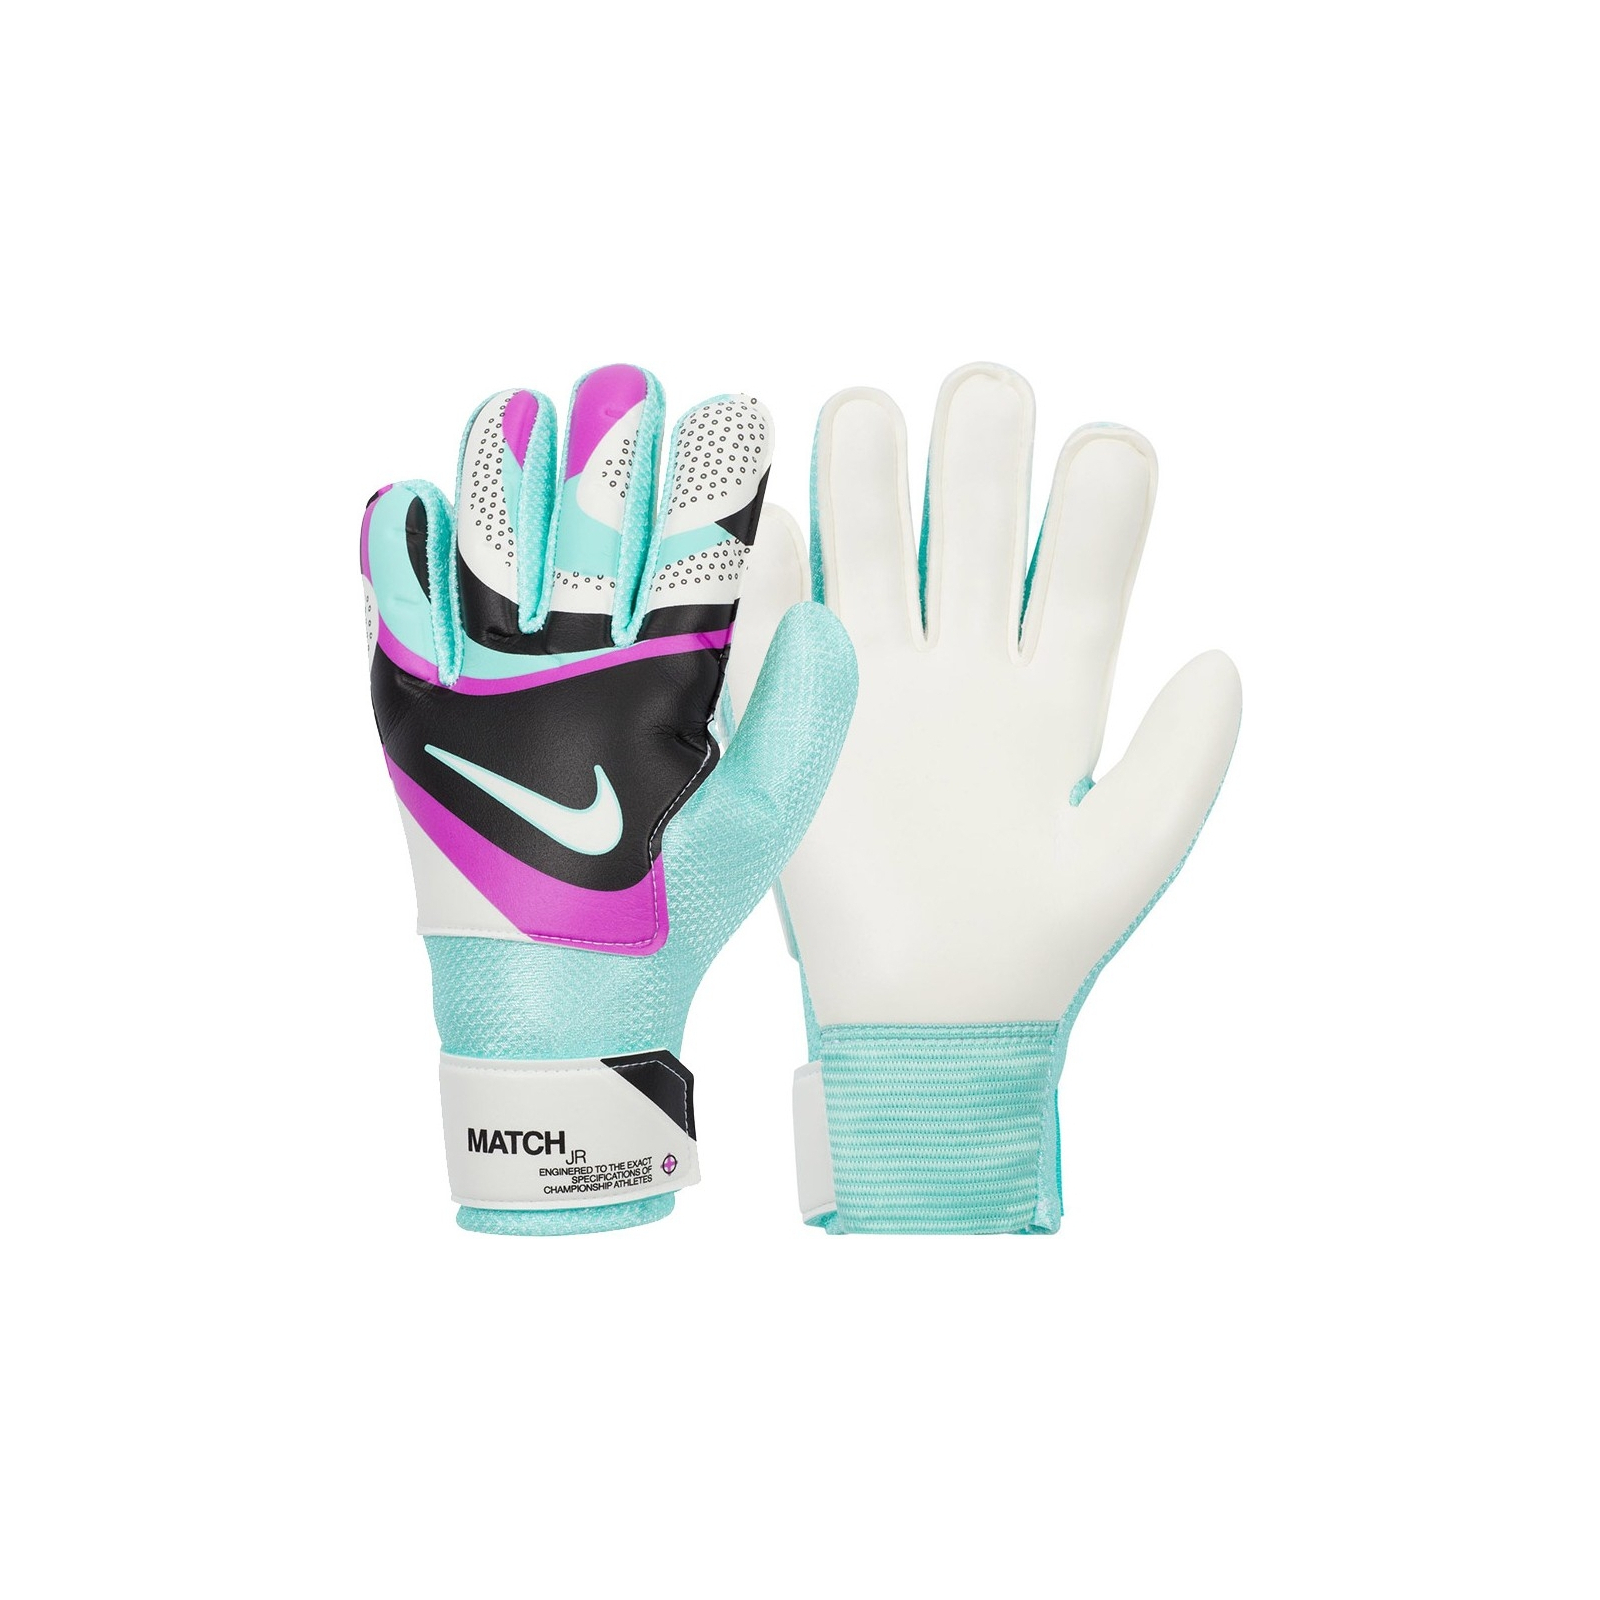 Вратарские перчатки Nike NK GK Match JR - HO23 FJ4864-010 білий, бірюзовий Діт 6 (196968940684)